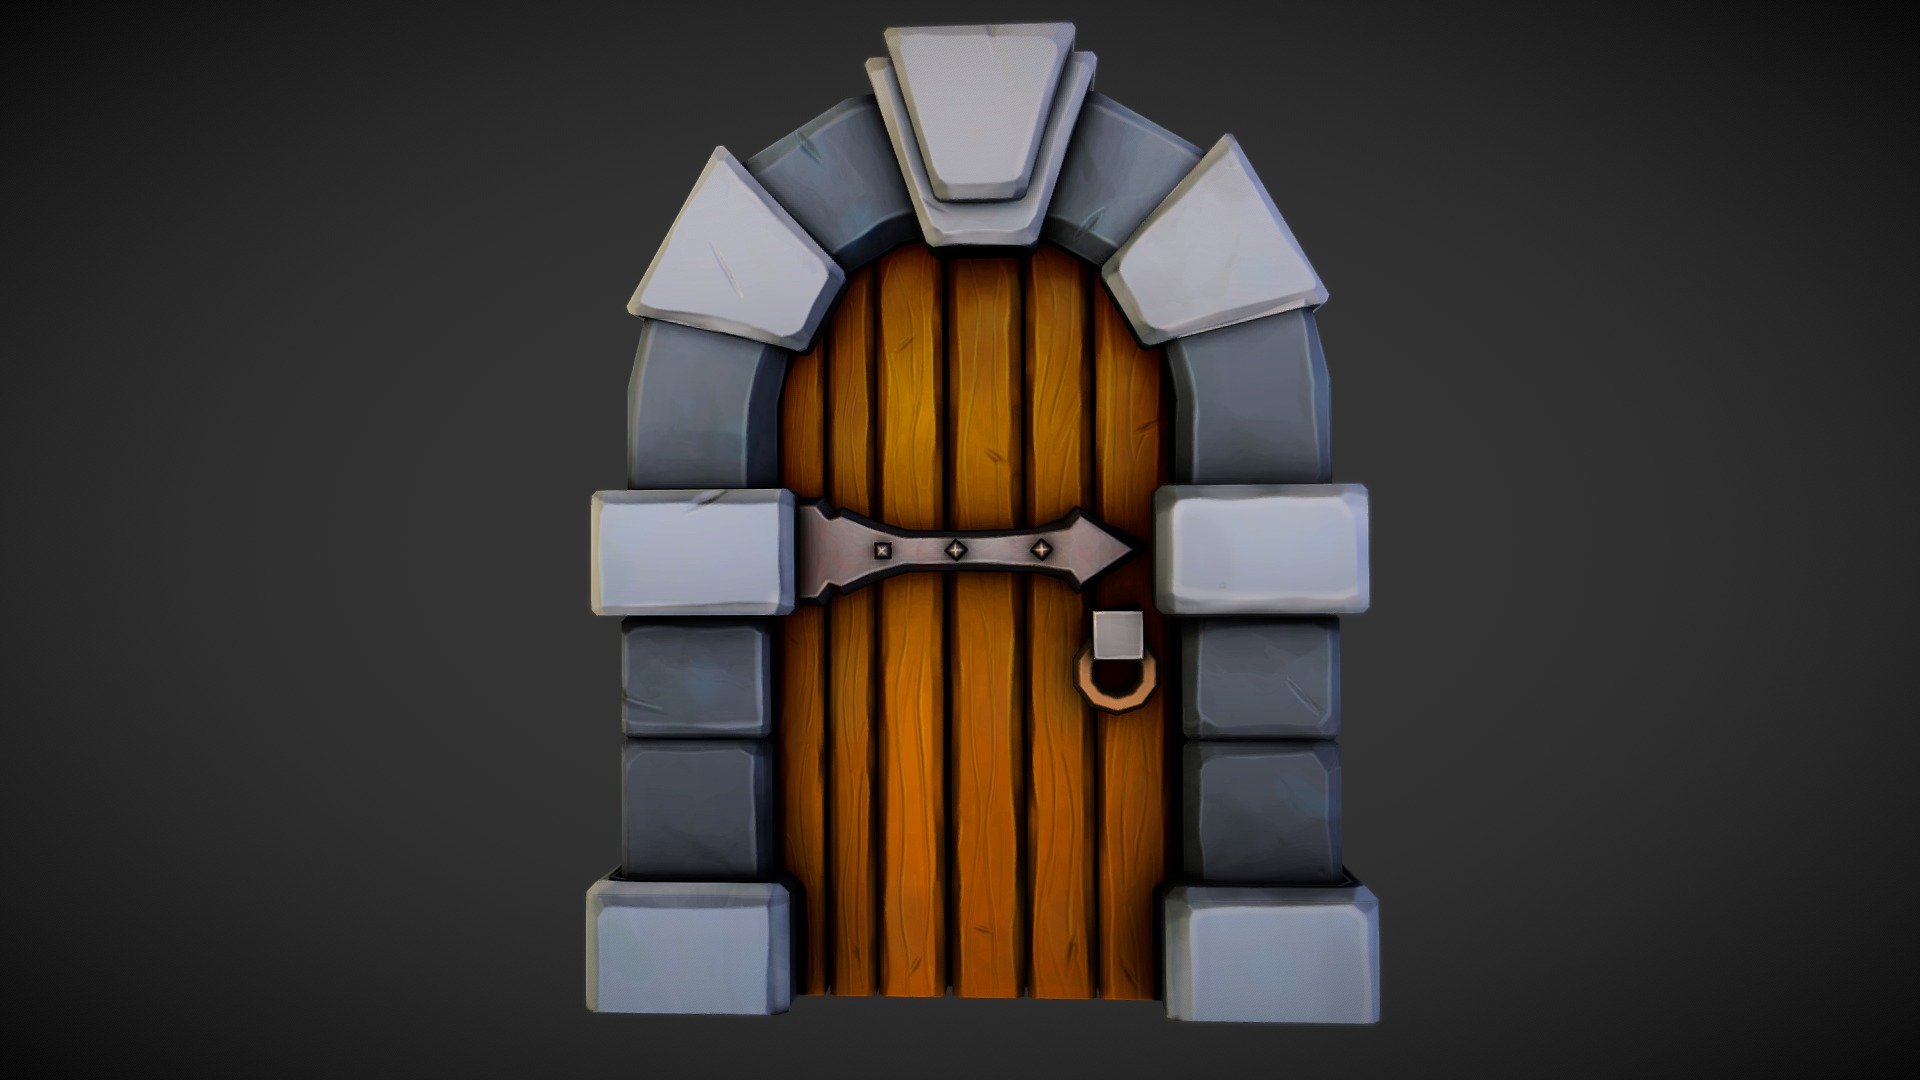 Dungeon Door